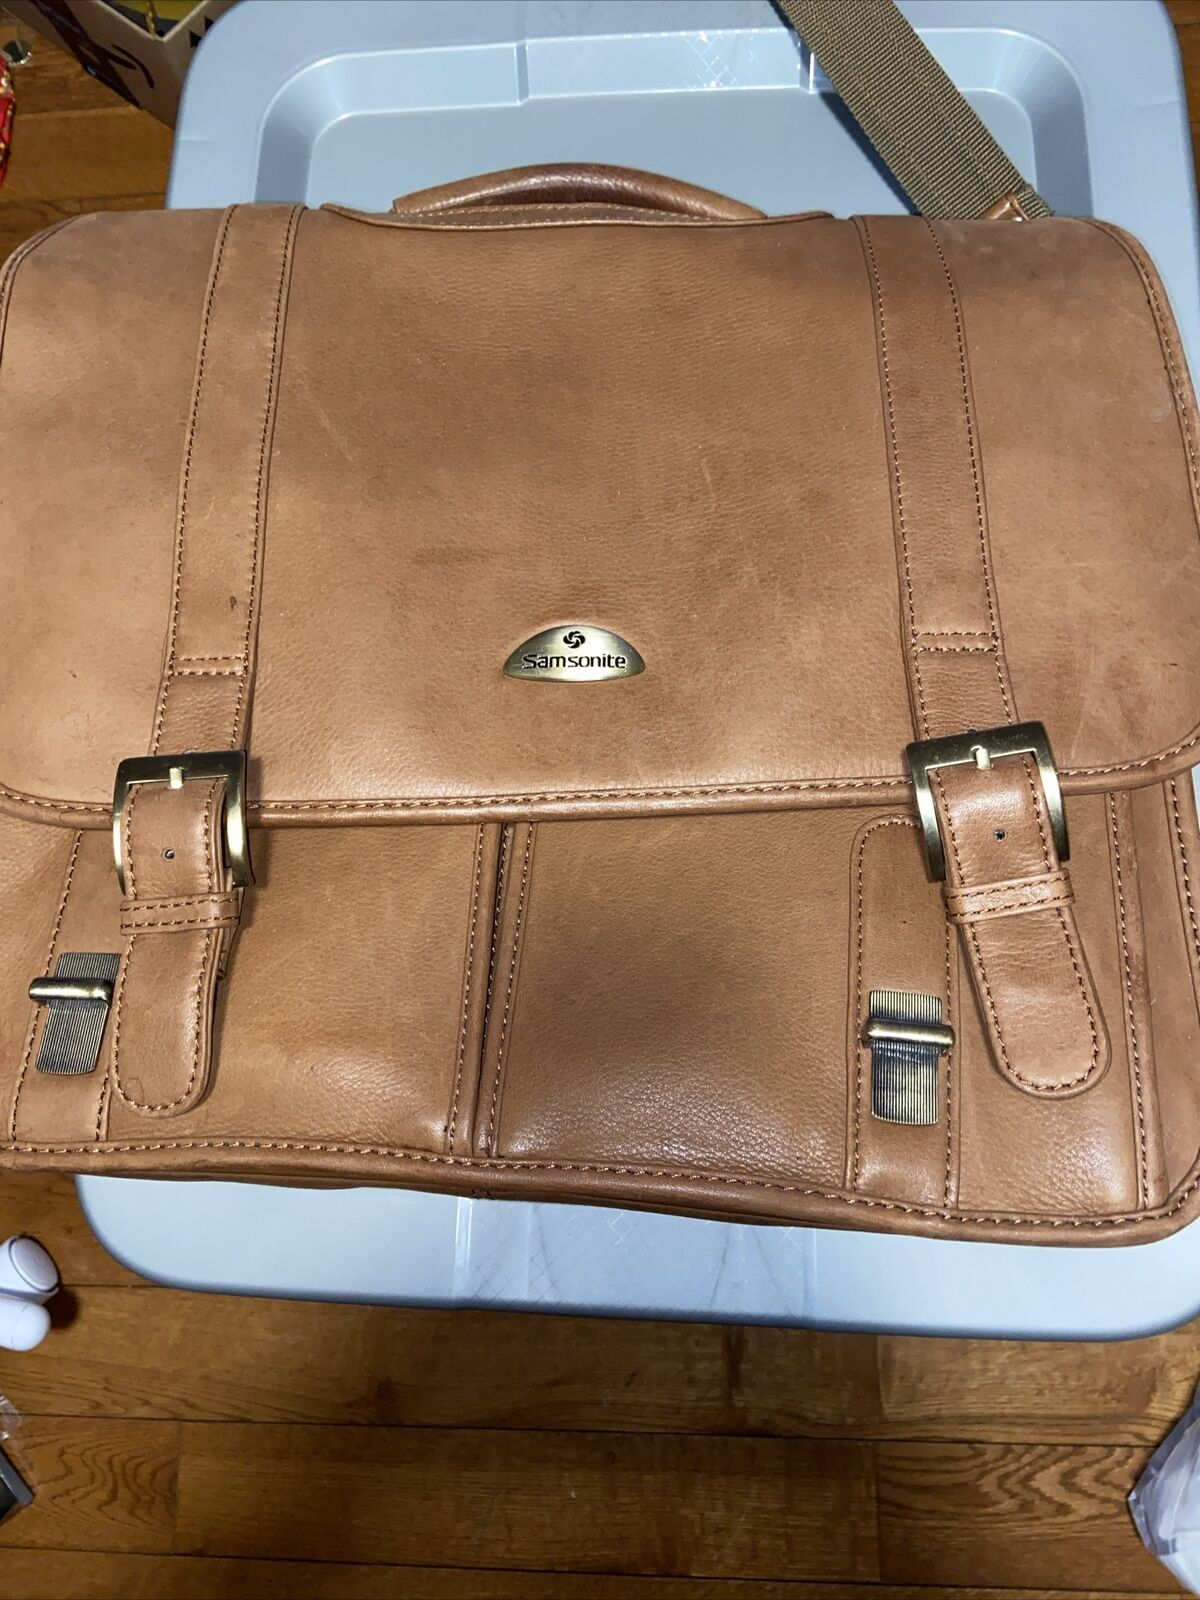 Samsonite Classic Premium Leather Business Briefcase 16” Laptop Case Travel Bag